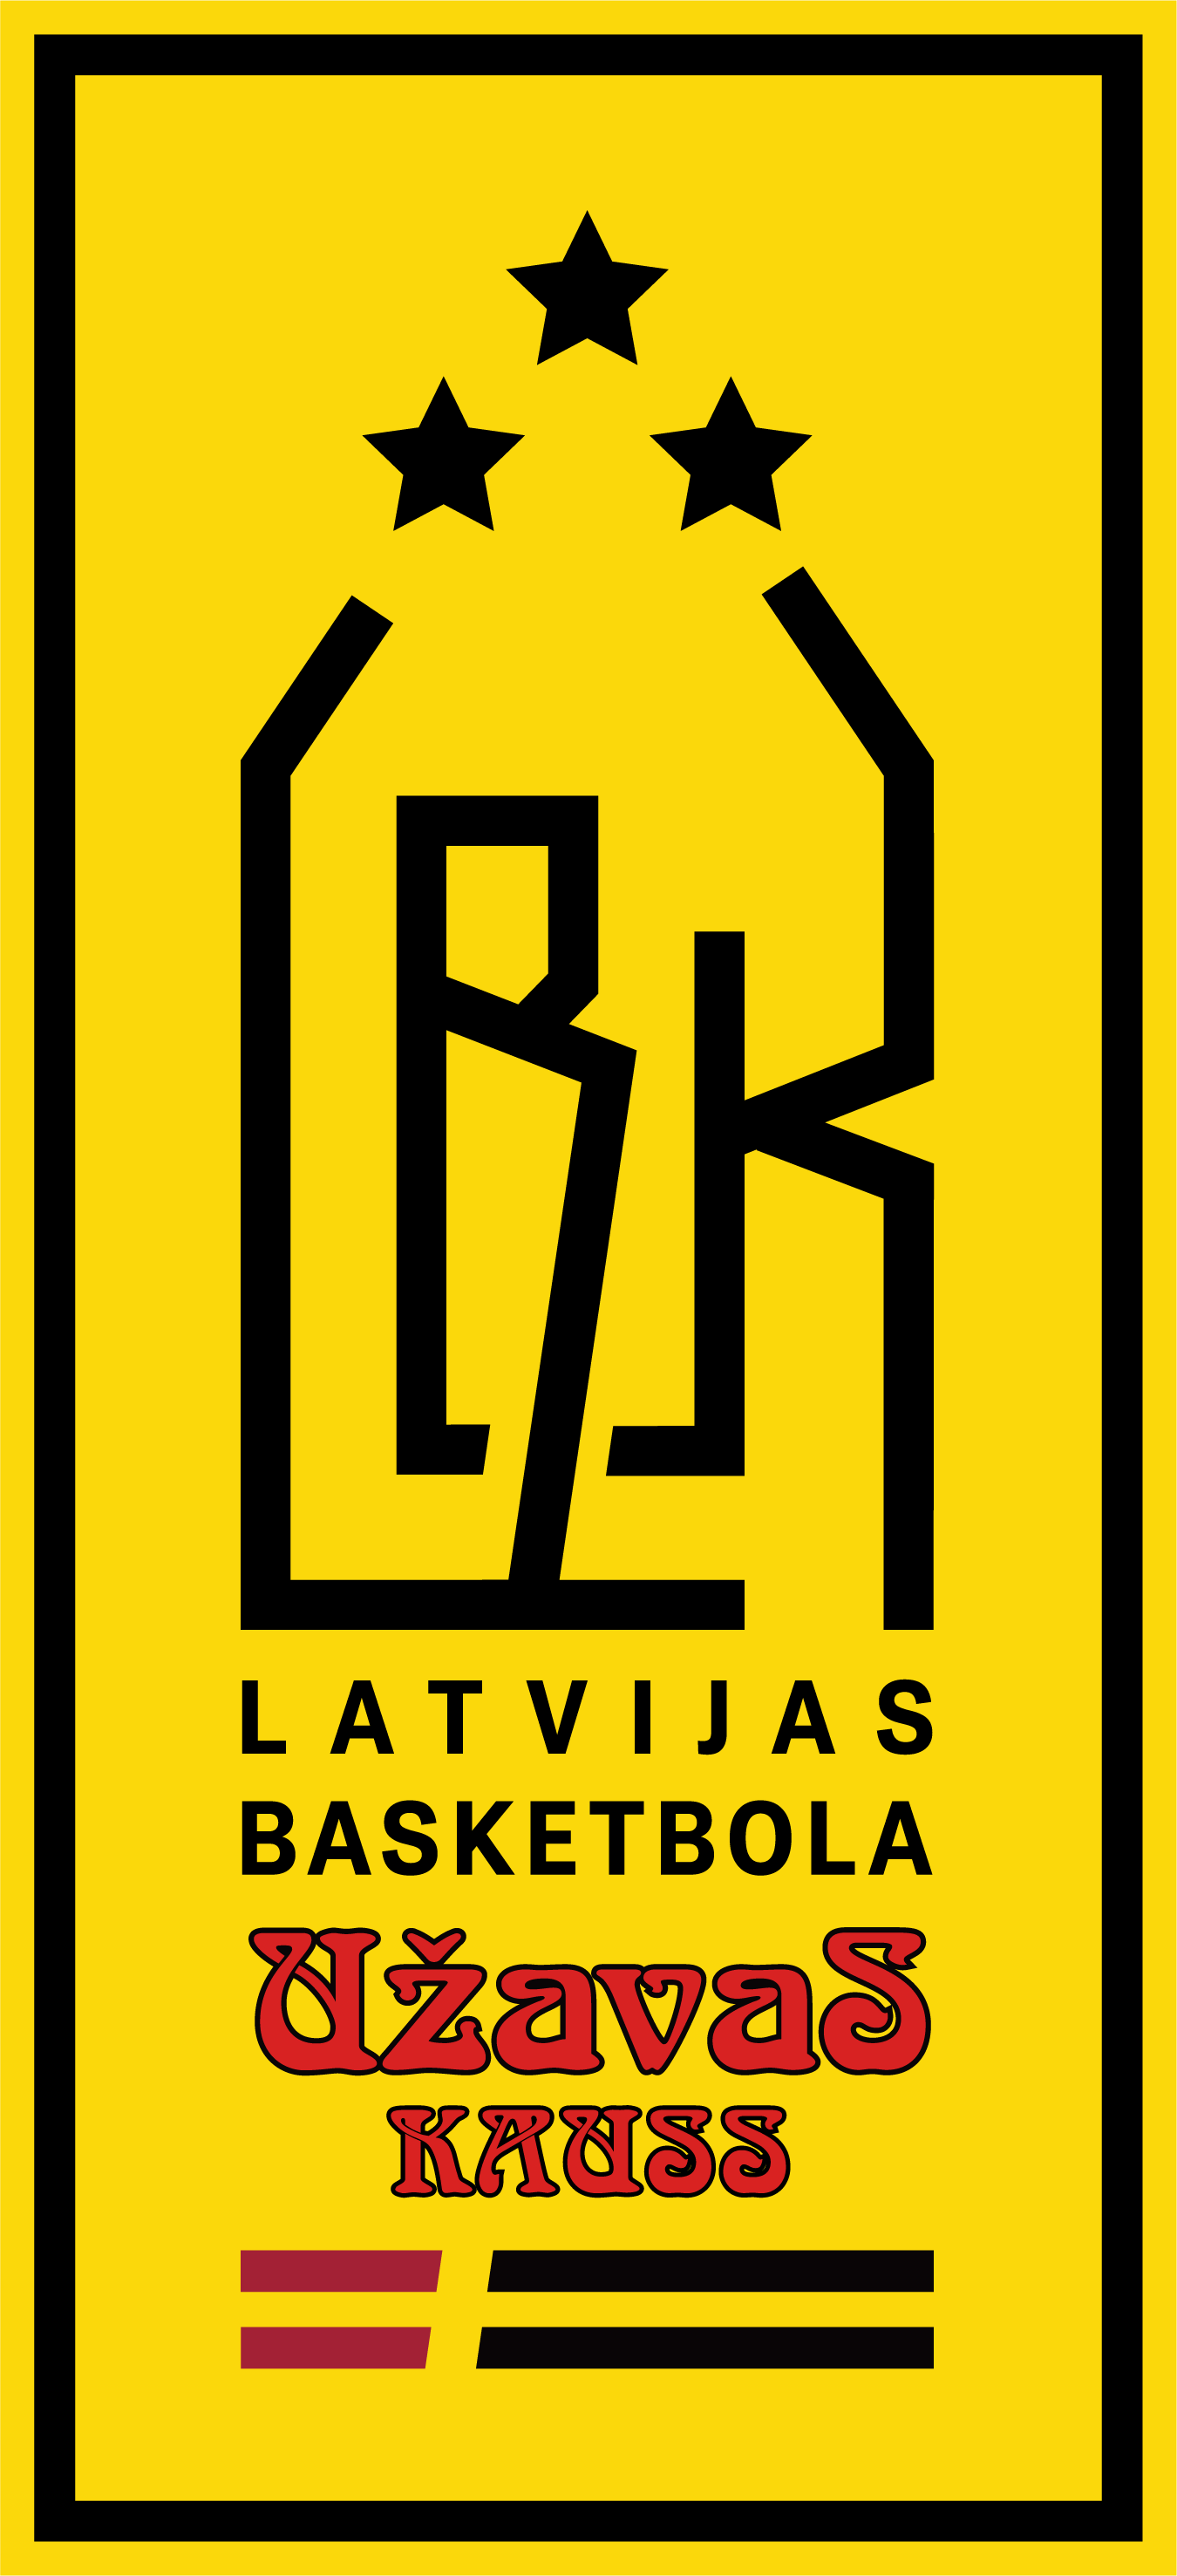 Latvijas basketbola Užavas kauss: atklāšanas spēlē Tukumam +1, atbildes mačs 25. oktobrī